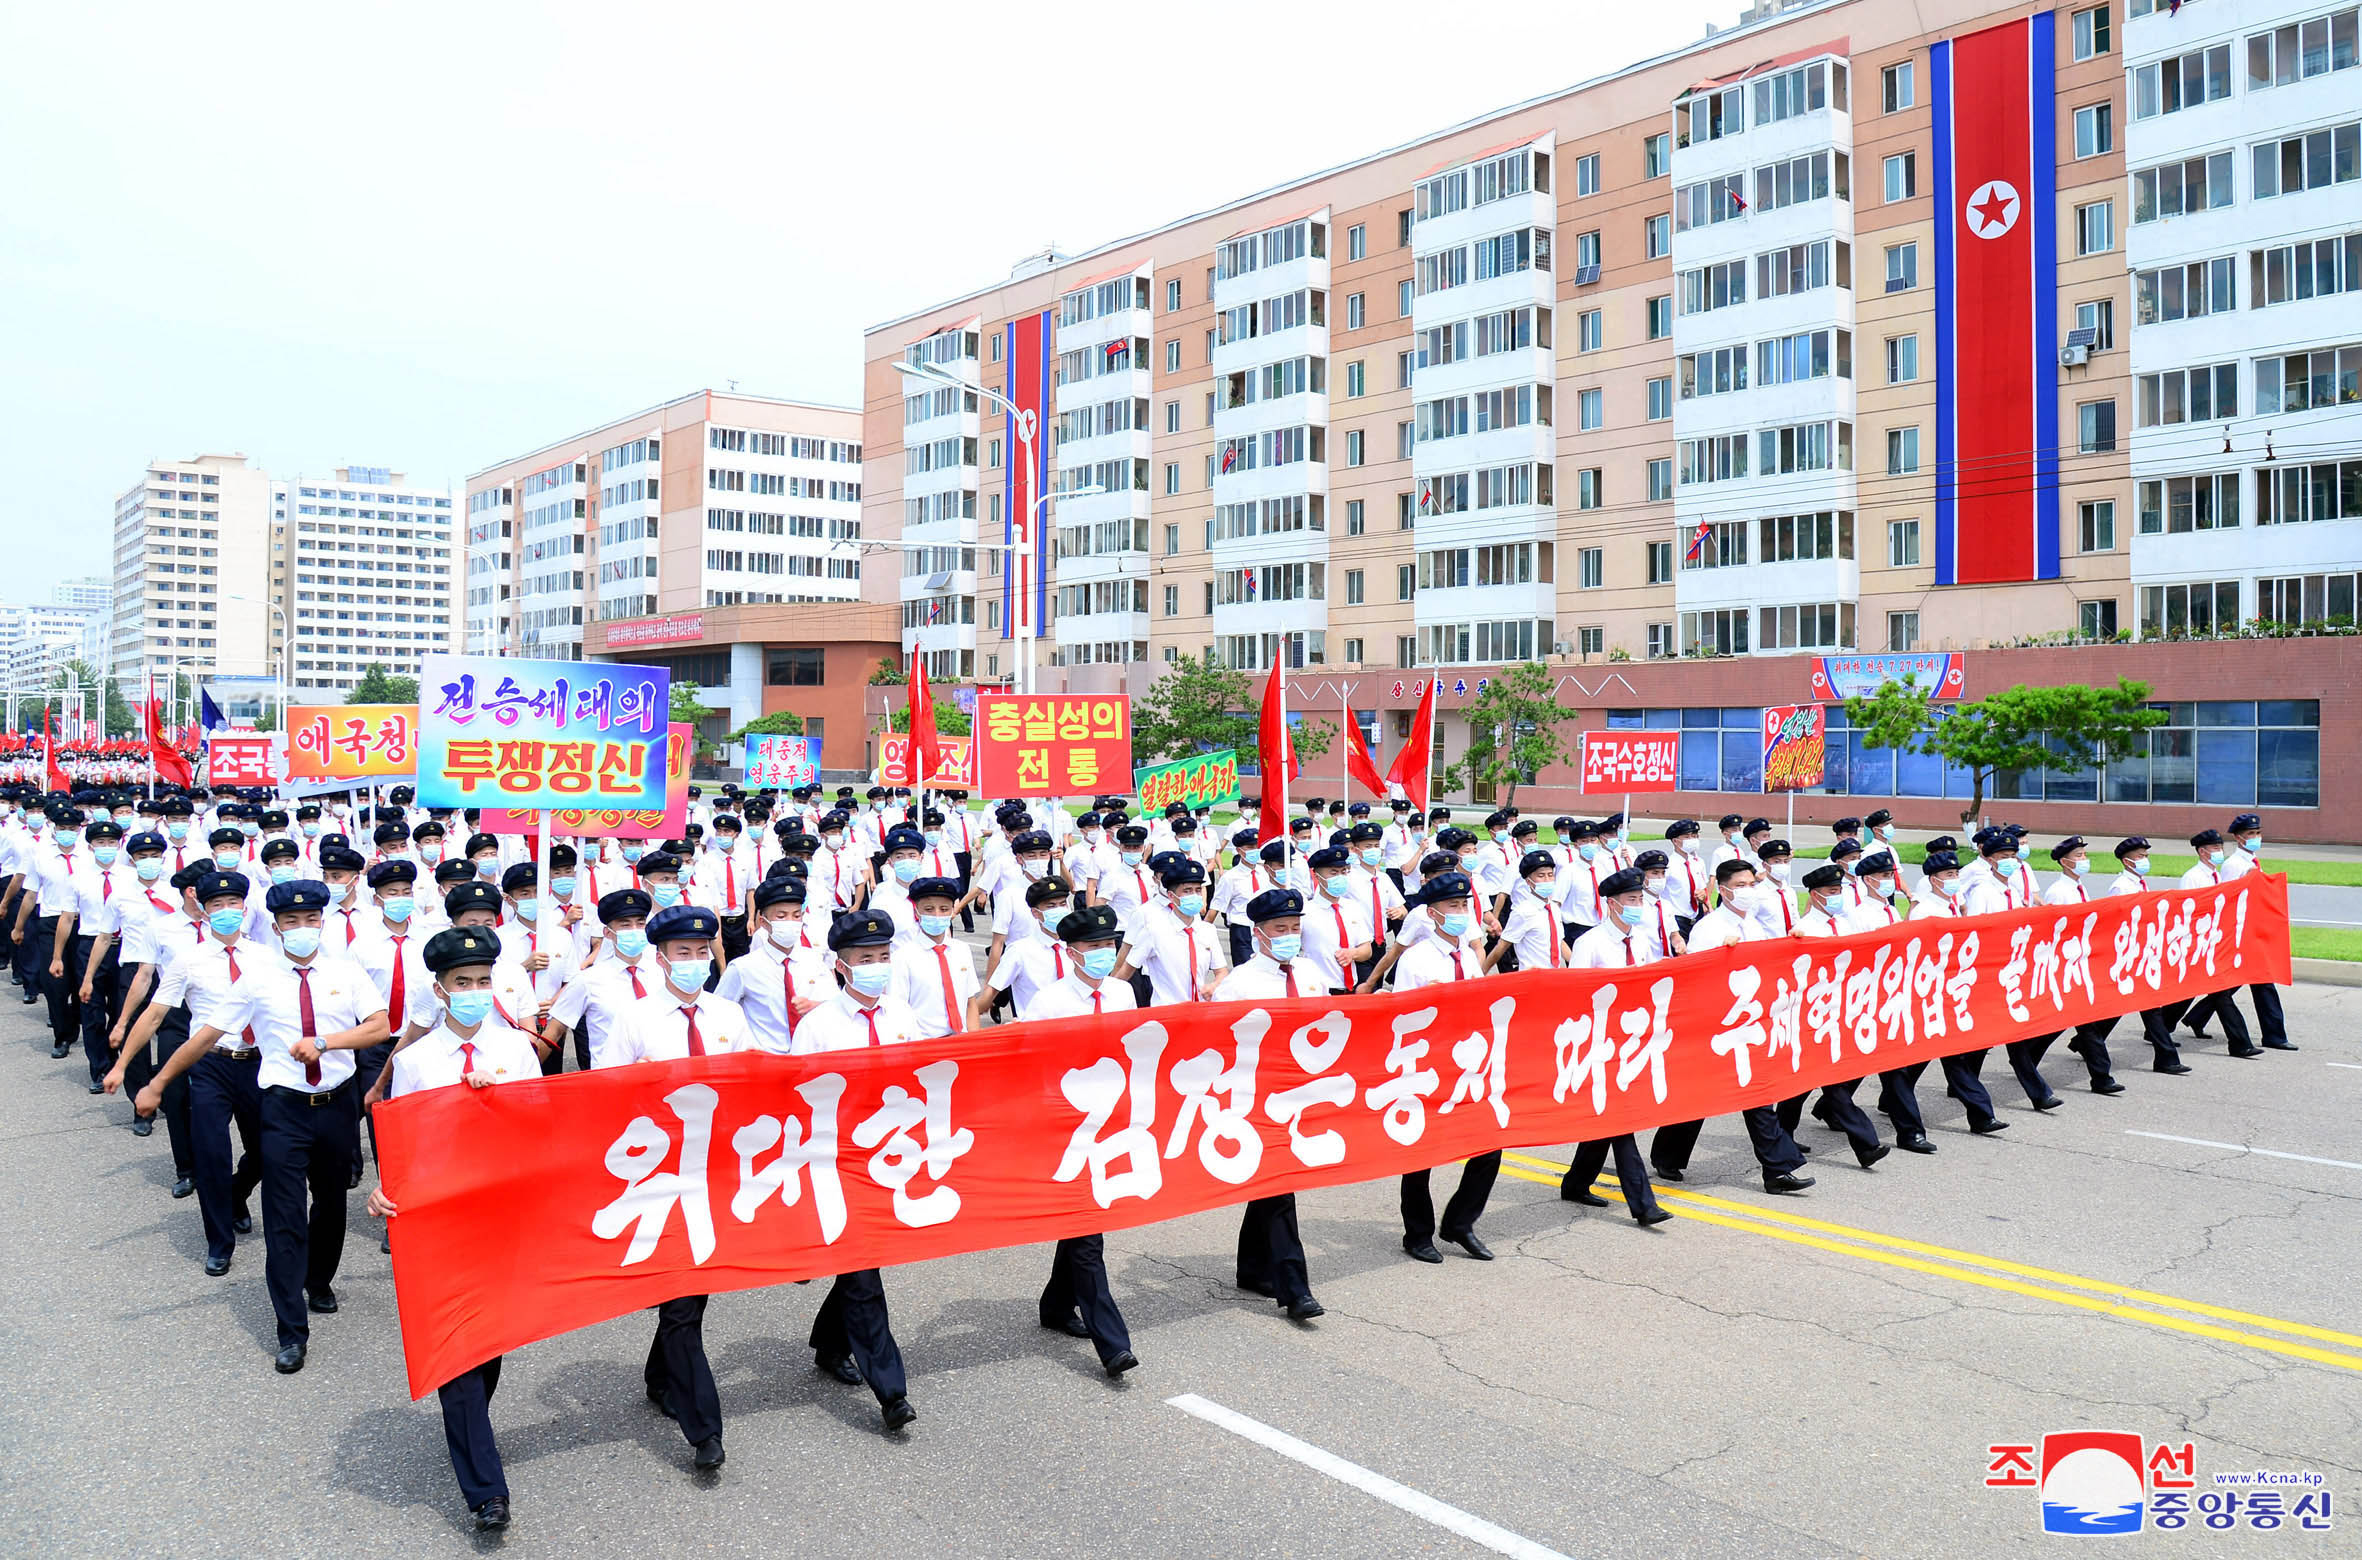 정전협정 체결 69주년을 맞아 대학생들이 평양 중심가에서 행진하고 있다. (출처 : 조선중앙통신, 2022년 7월)